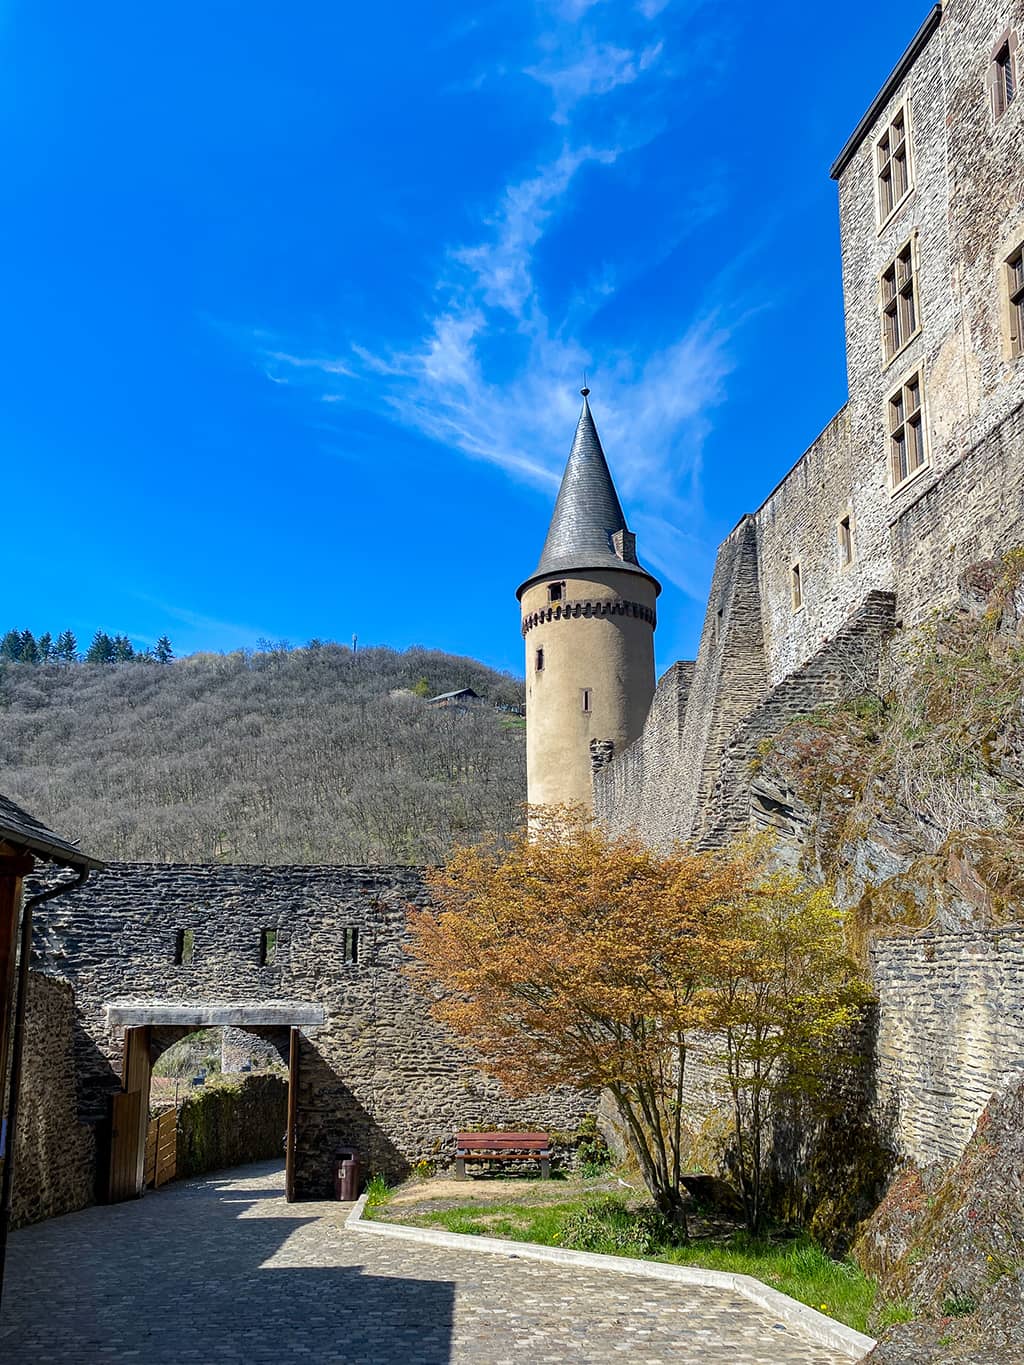 l'entrée du Château de Vianden dans le Nord du Luxembourg